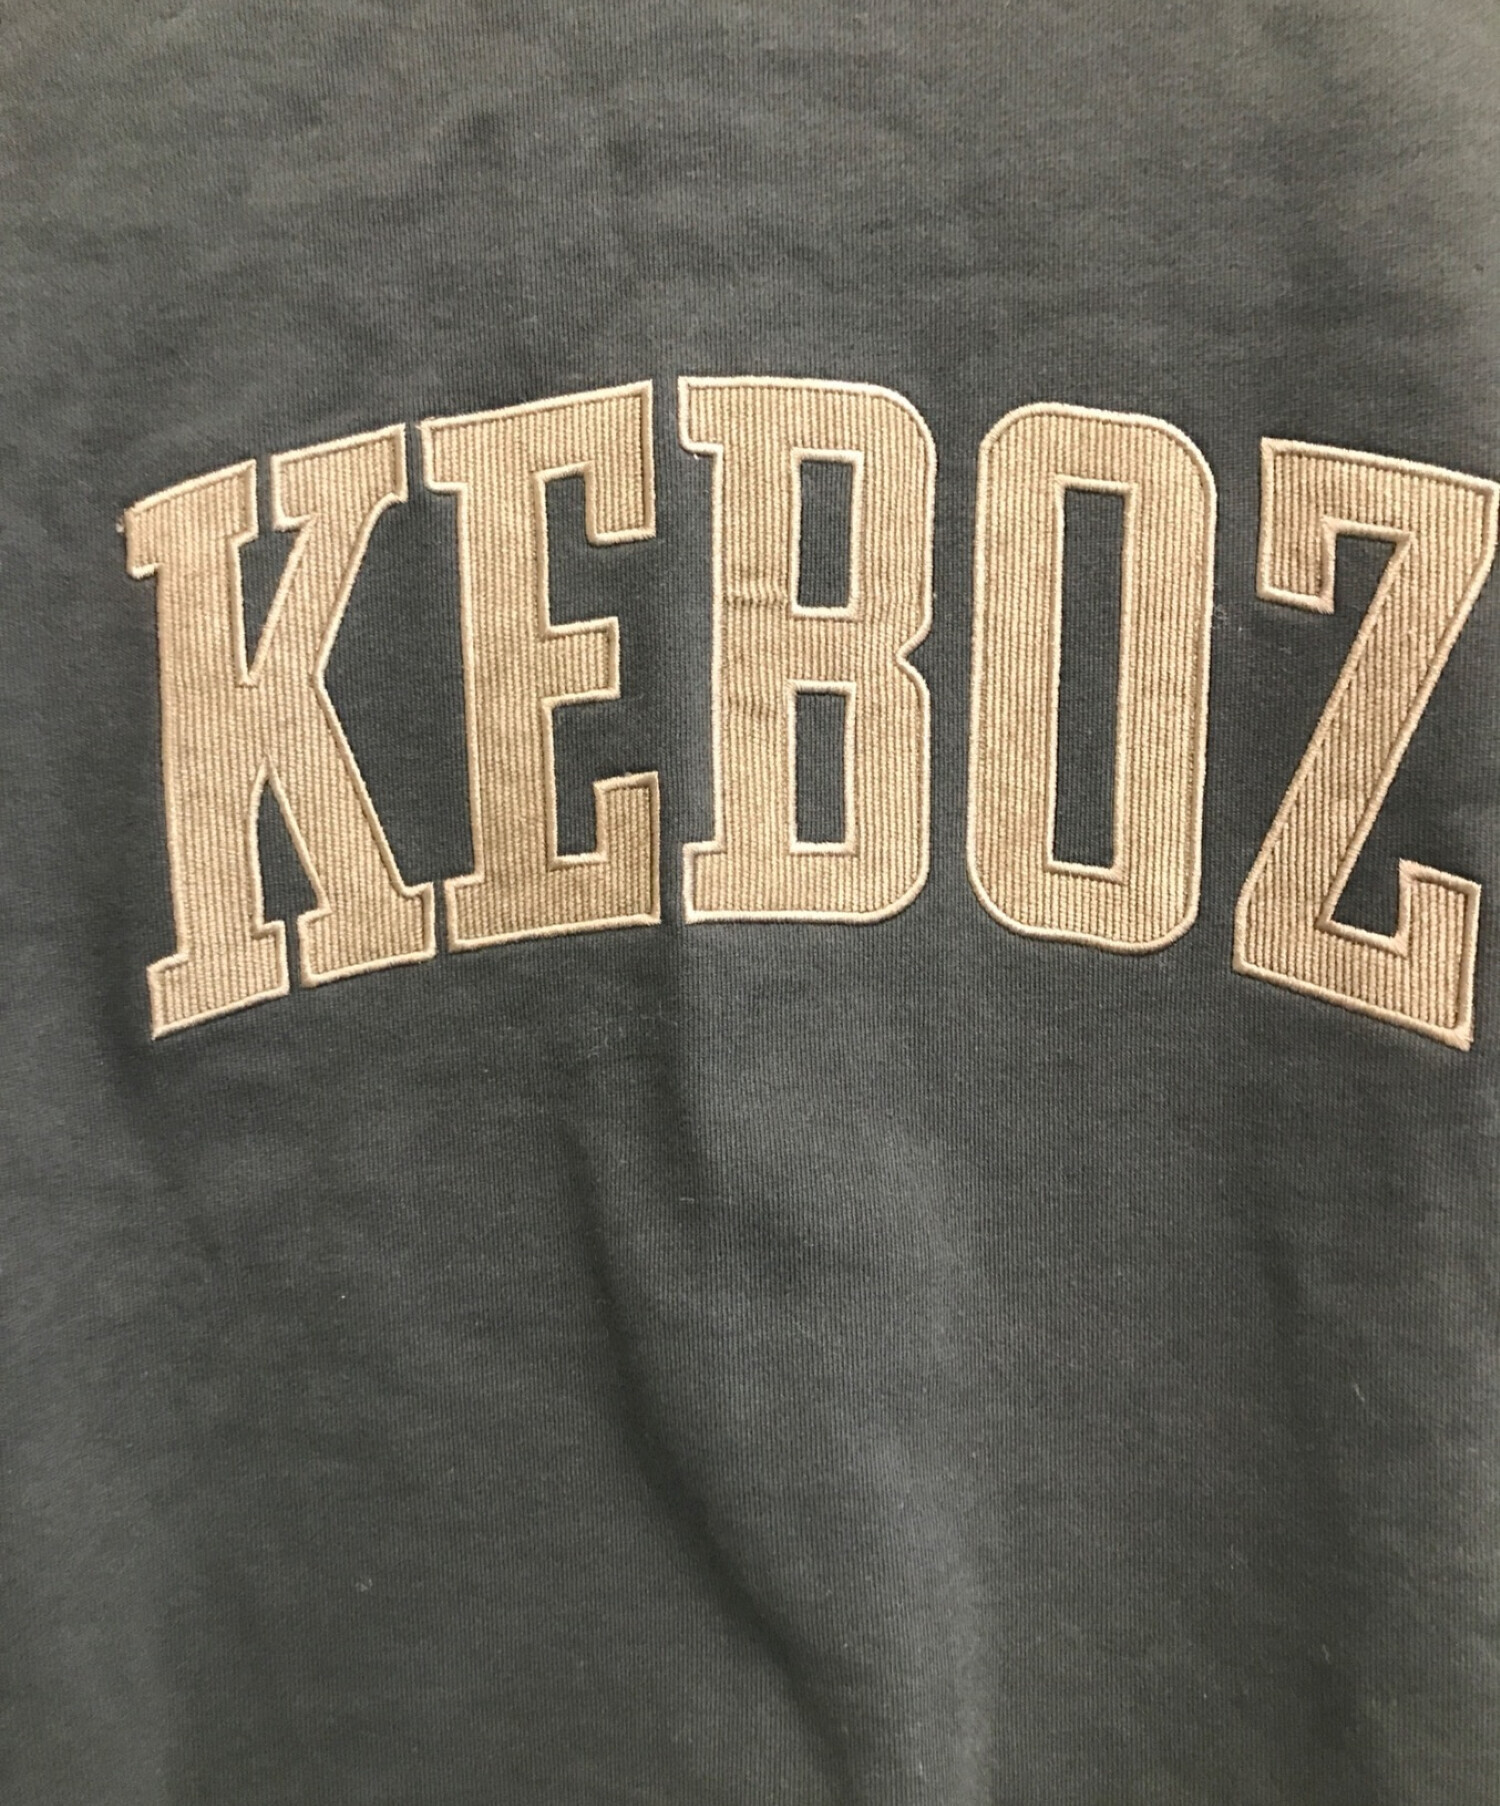 KEBOZ (ケボズ) スウェット ブラック サイズ:XL